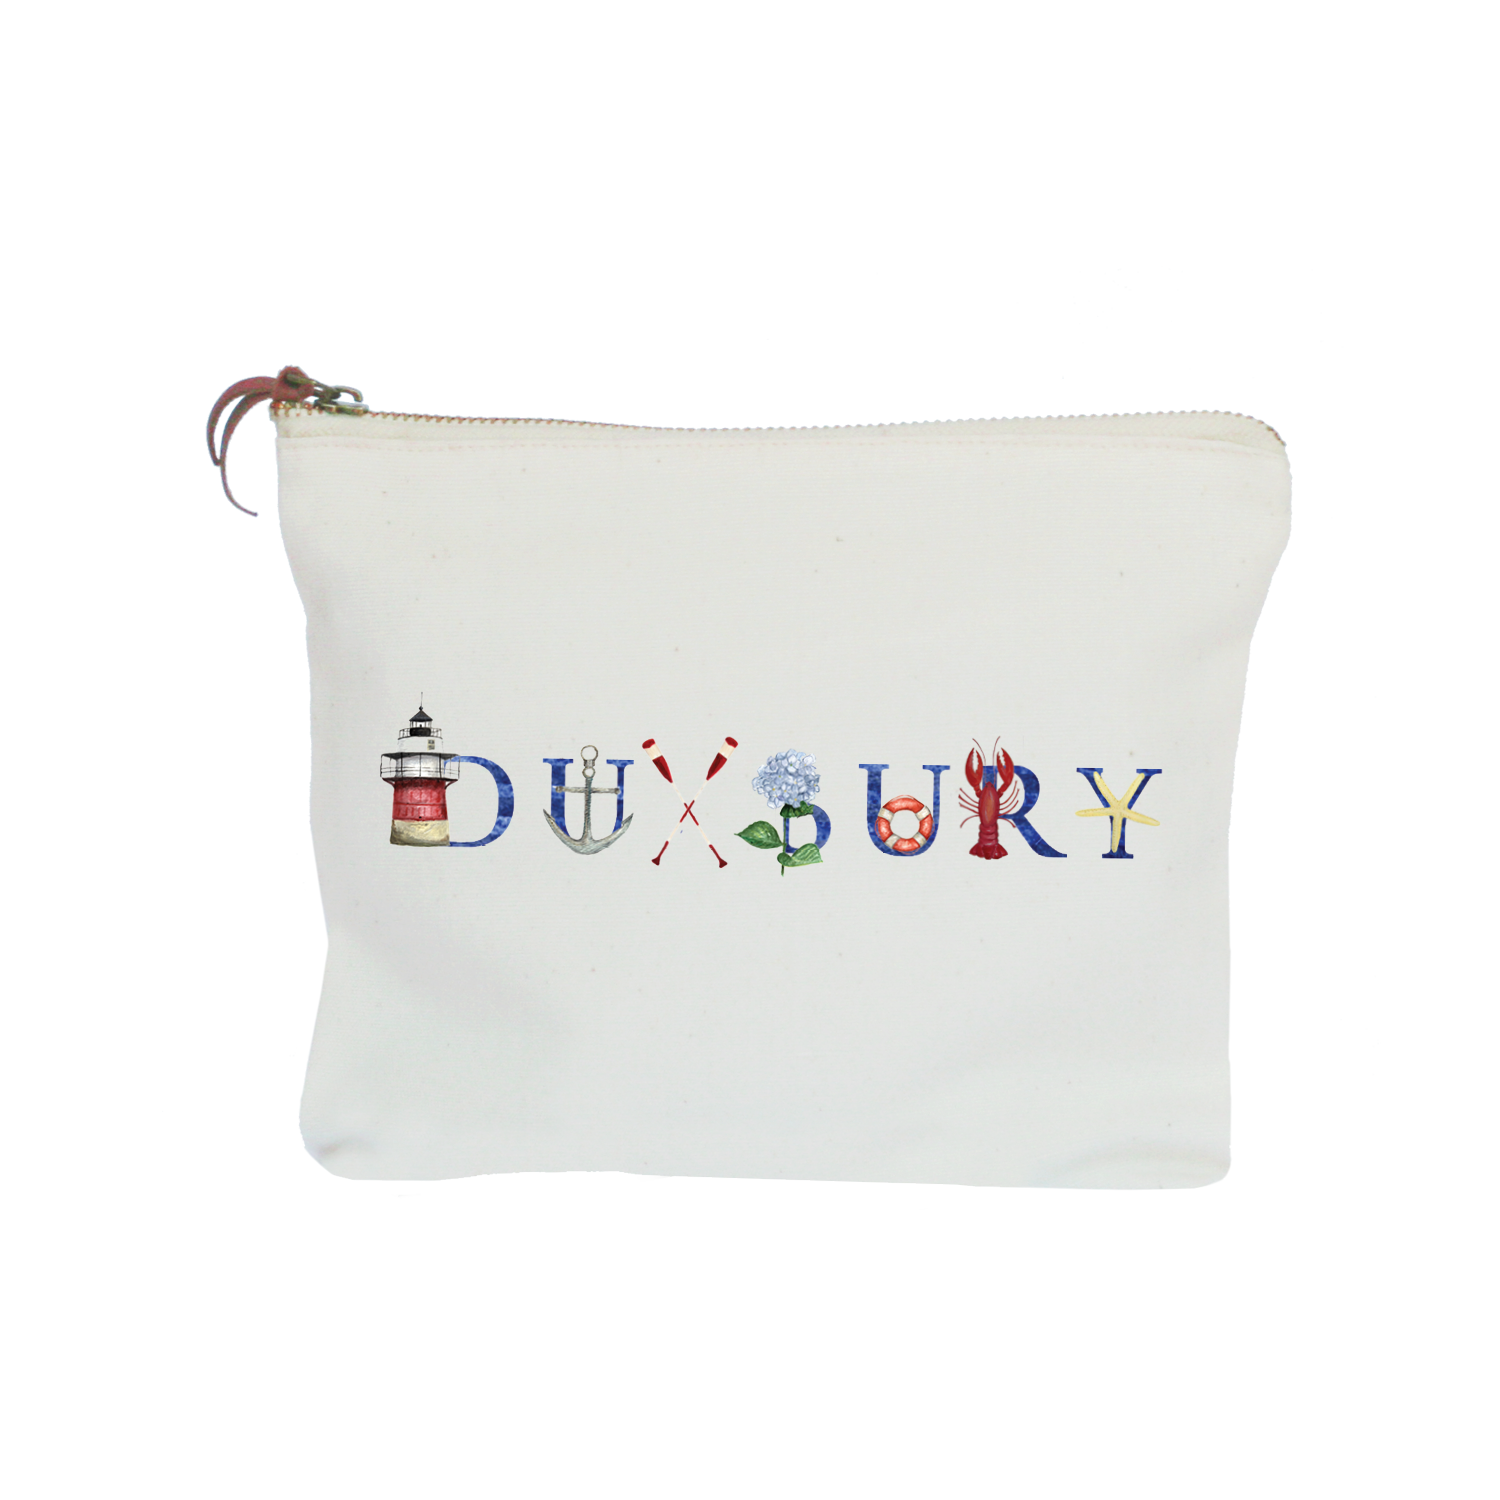 Duxbury zipper pouch